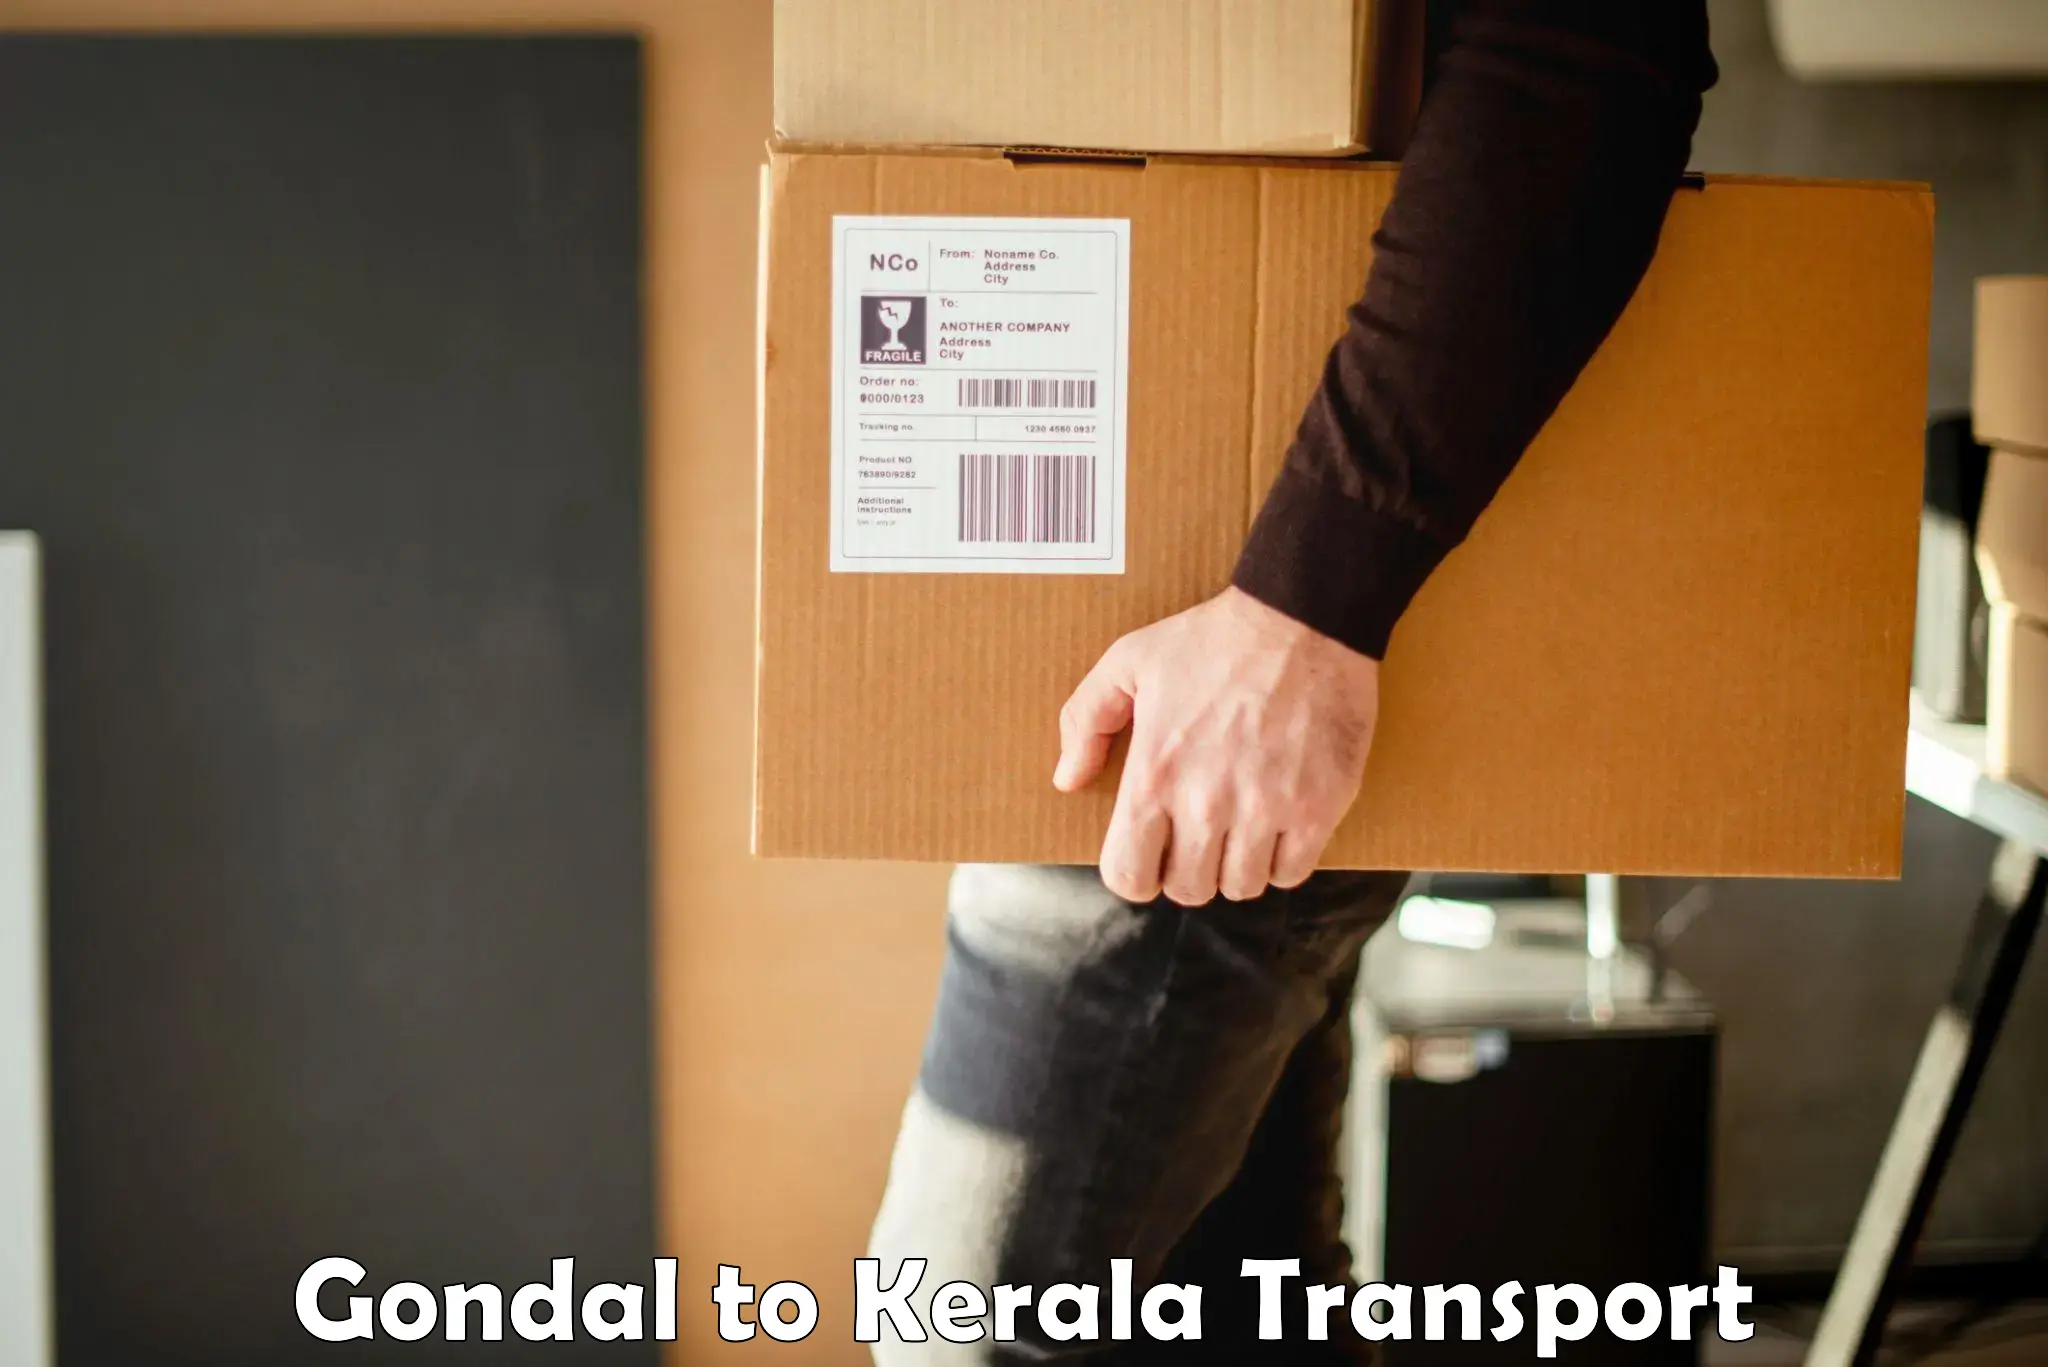 Pick up transport service Gondal to Mundakayam